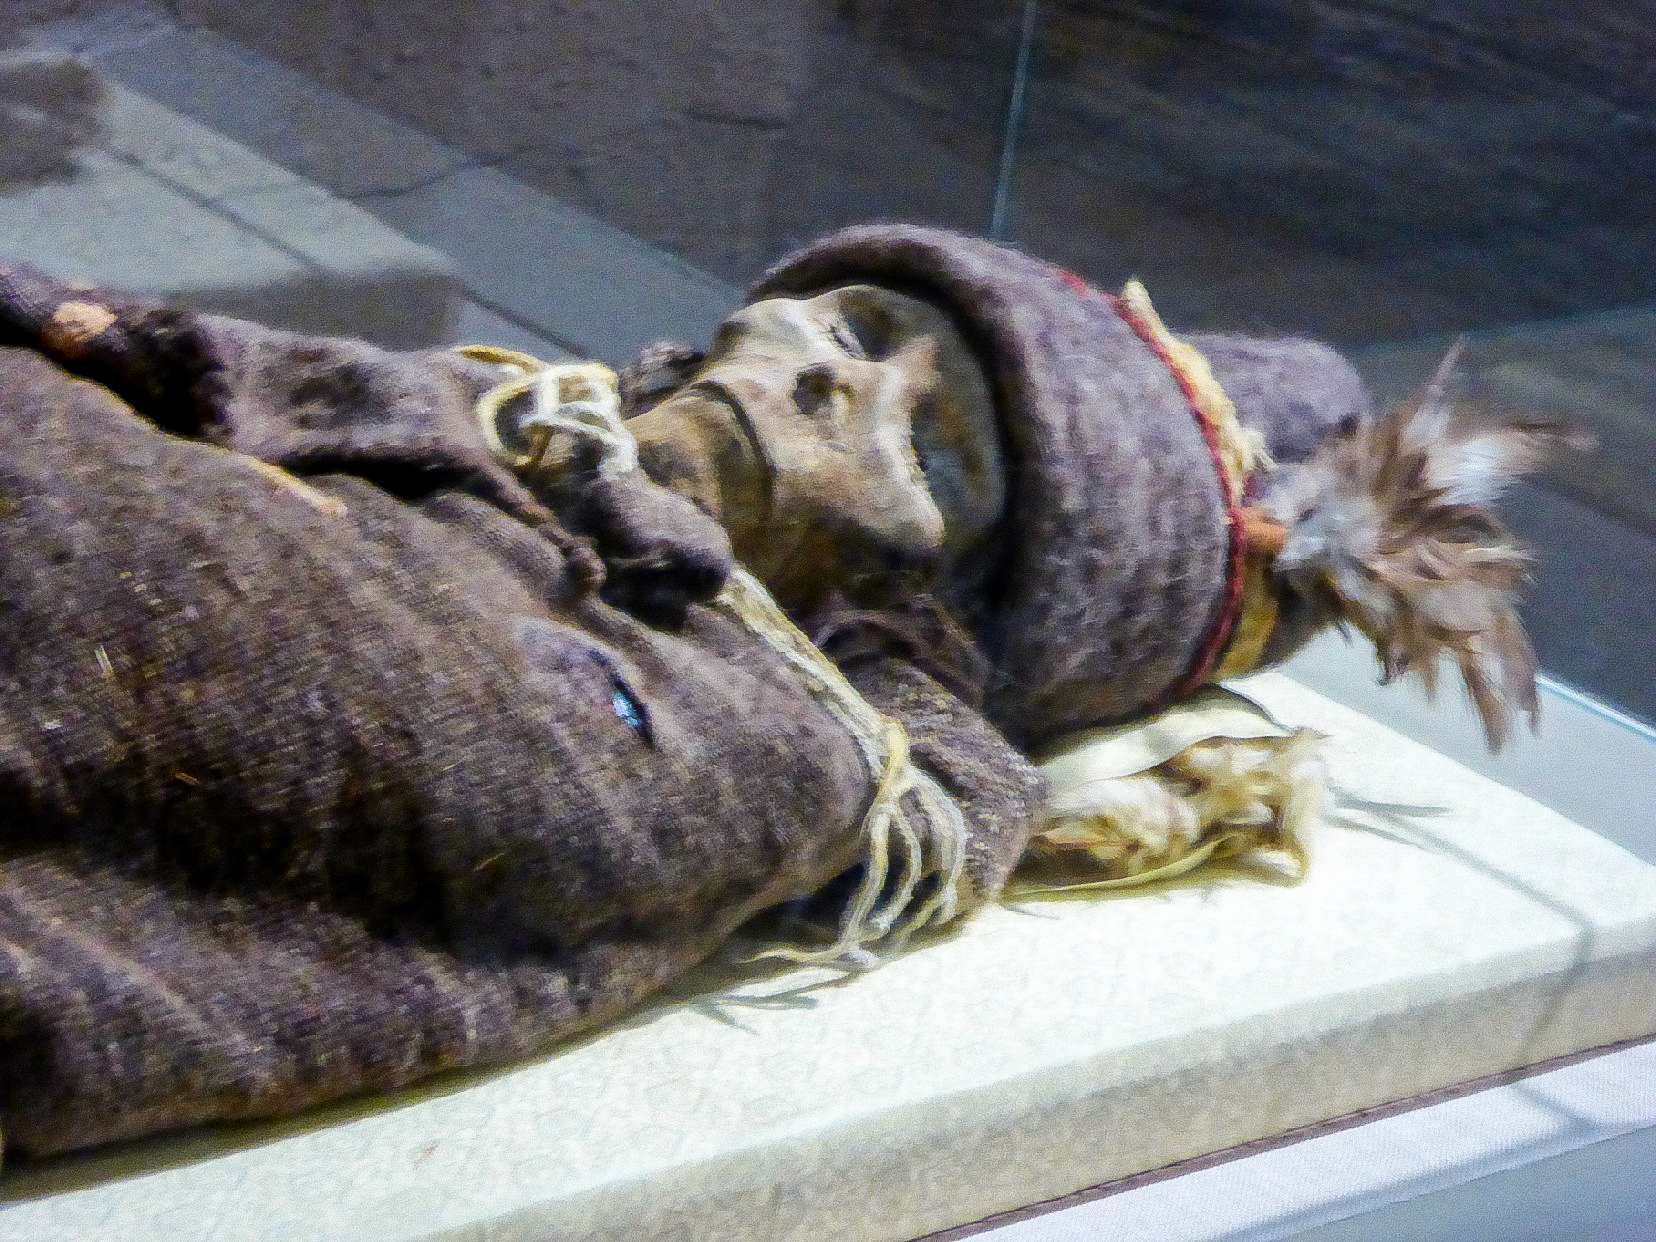 "มัมมี่เซียวเหอ" จัดแสดงในพิพิธภัณฑ์ซินเจียง เป็นหนึ่งในมัมมี่ทาริมที่เก่าแก่ที่สุด ซึ่งมีอายุมากกว่า 3800 ปีก่อน